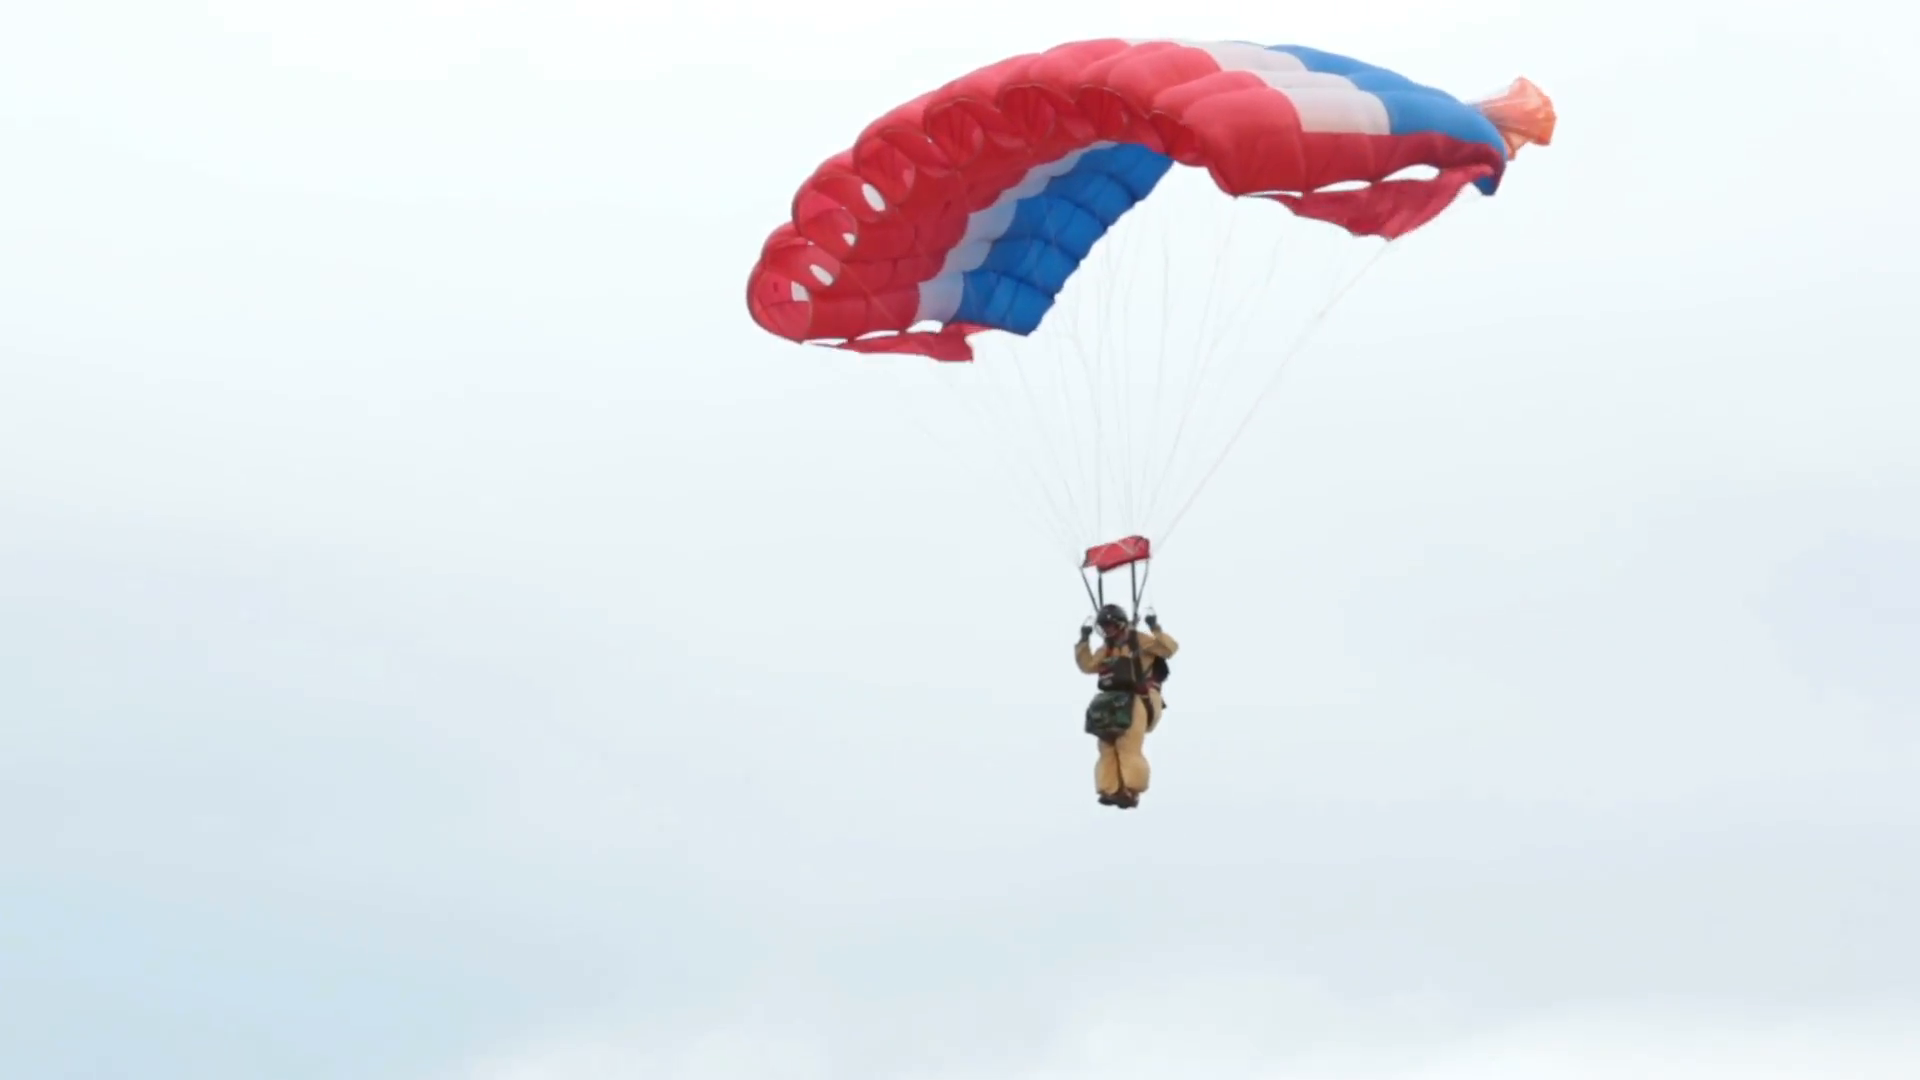 Firefighter fireman smoke jumper parachute landing. Wildfire burns ...